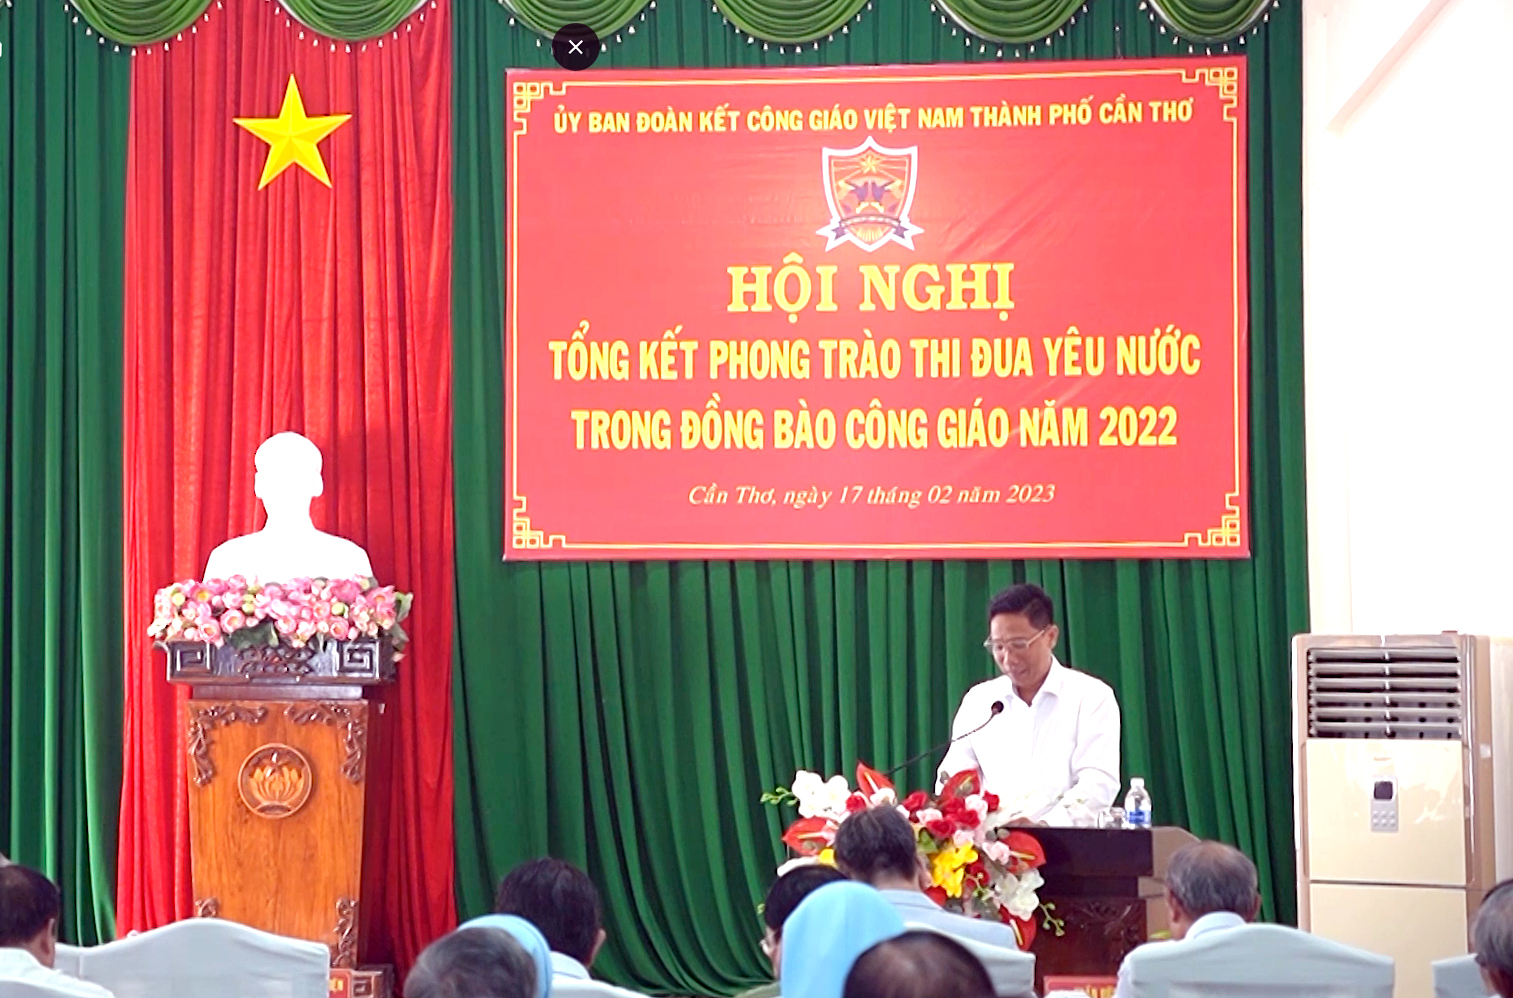 Ông Nguyễn Thực Hiện, Phó Chủ tịch UBND thành phố, phát biểu tại hội nghị.